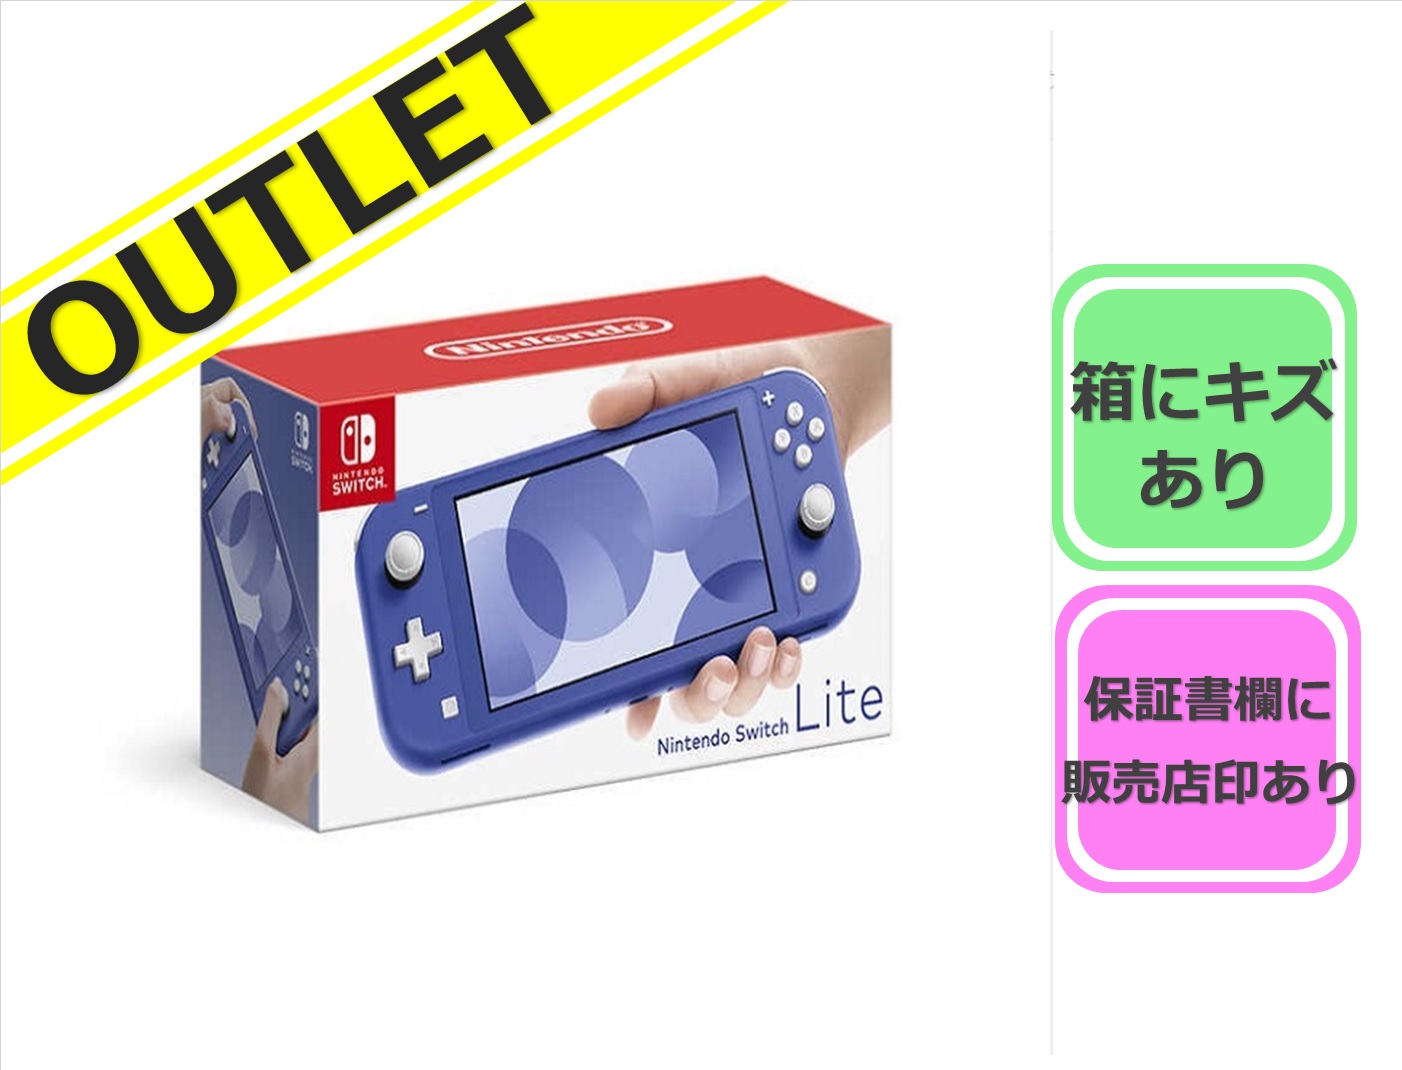 【アウトレット品】 Nintendo Switch Lite [ブルー] ※説明欄要確認